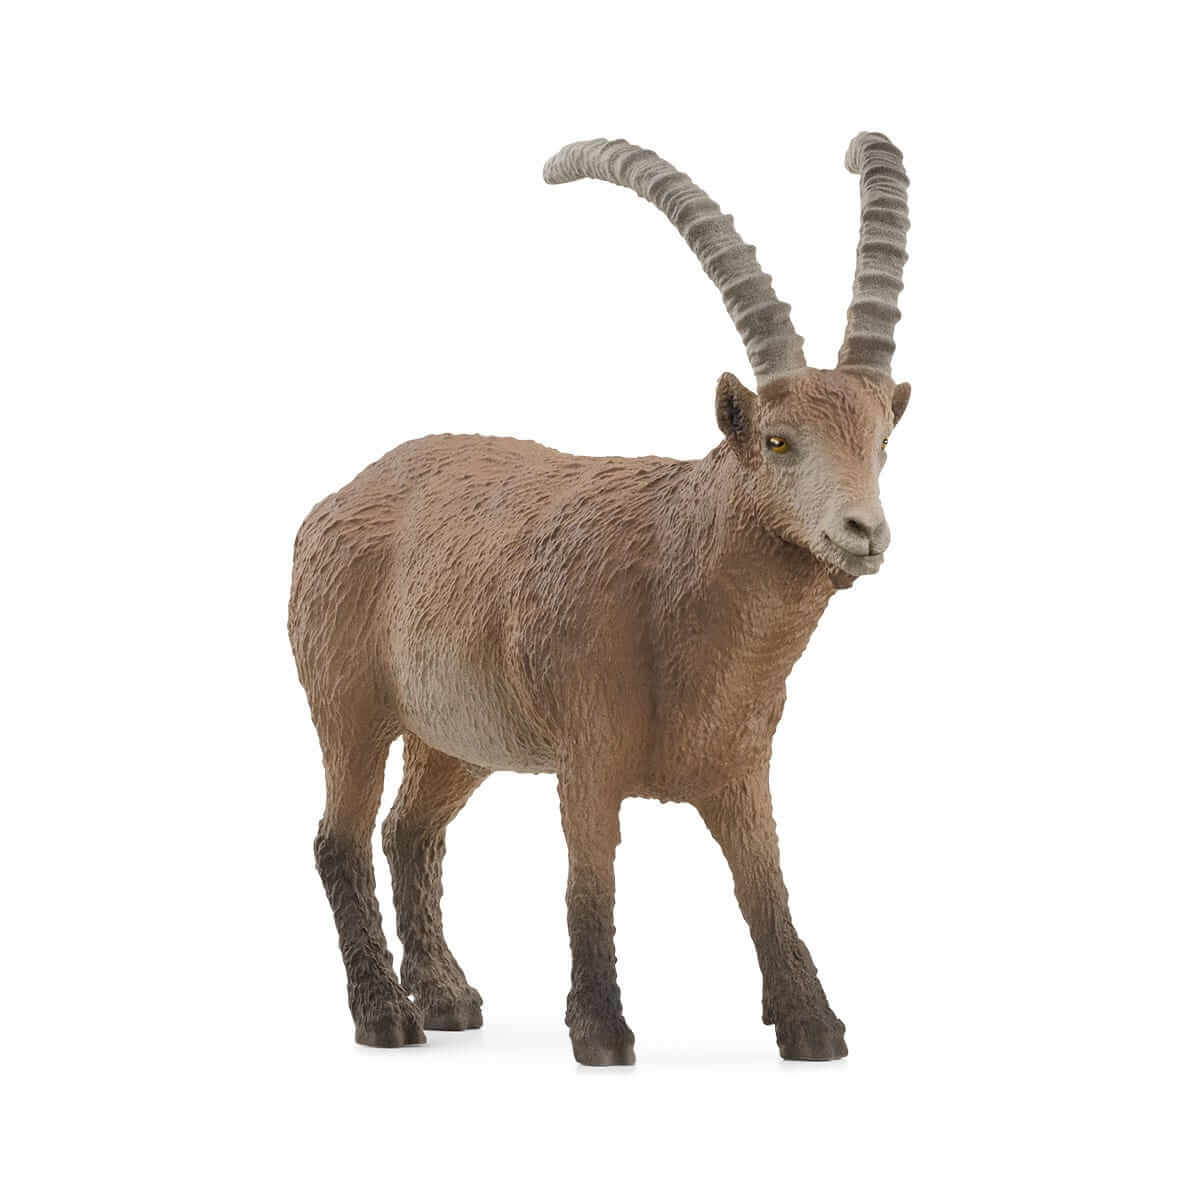 Schleich Wild Life Ibex Animal Figure